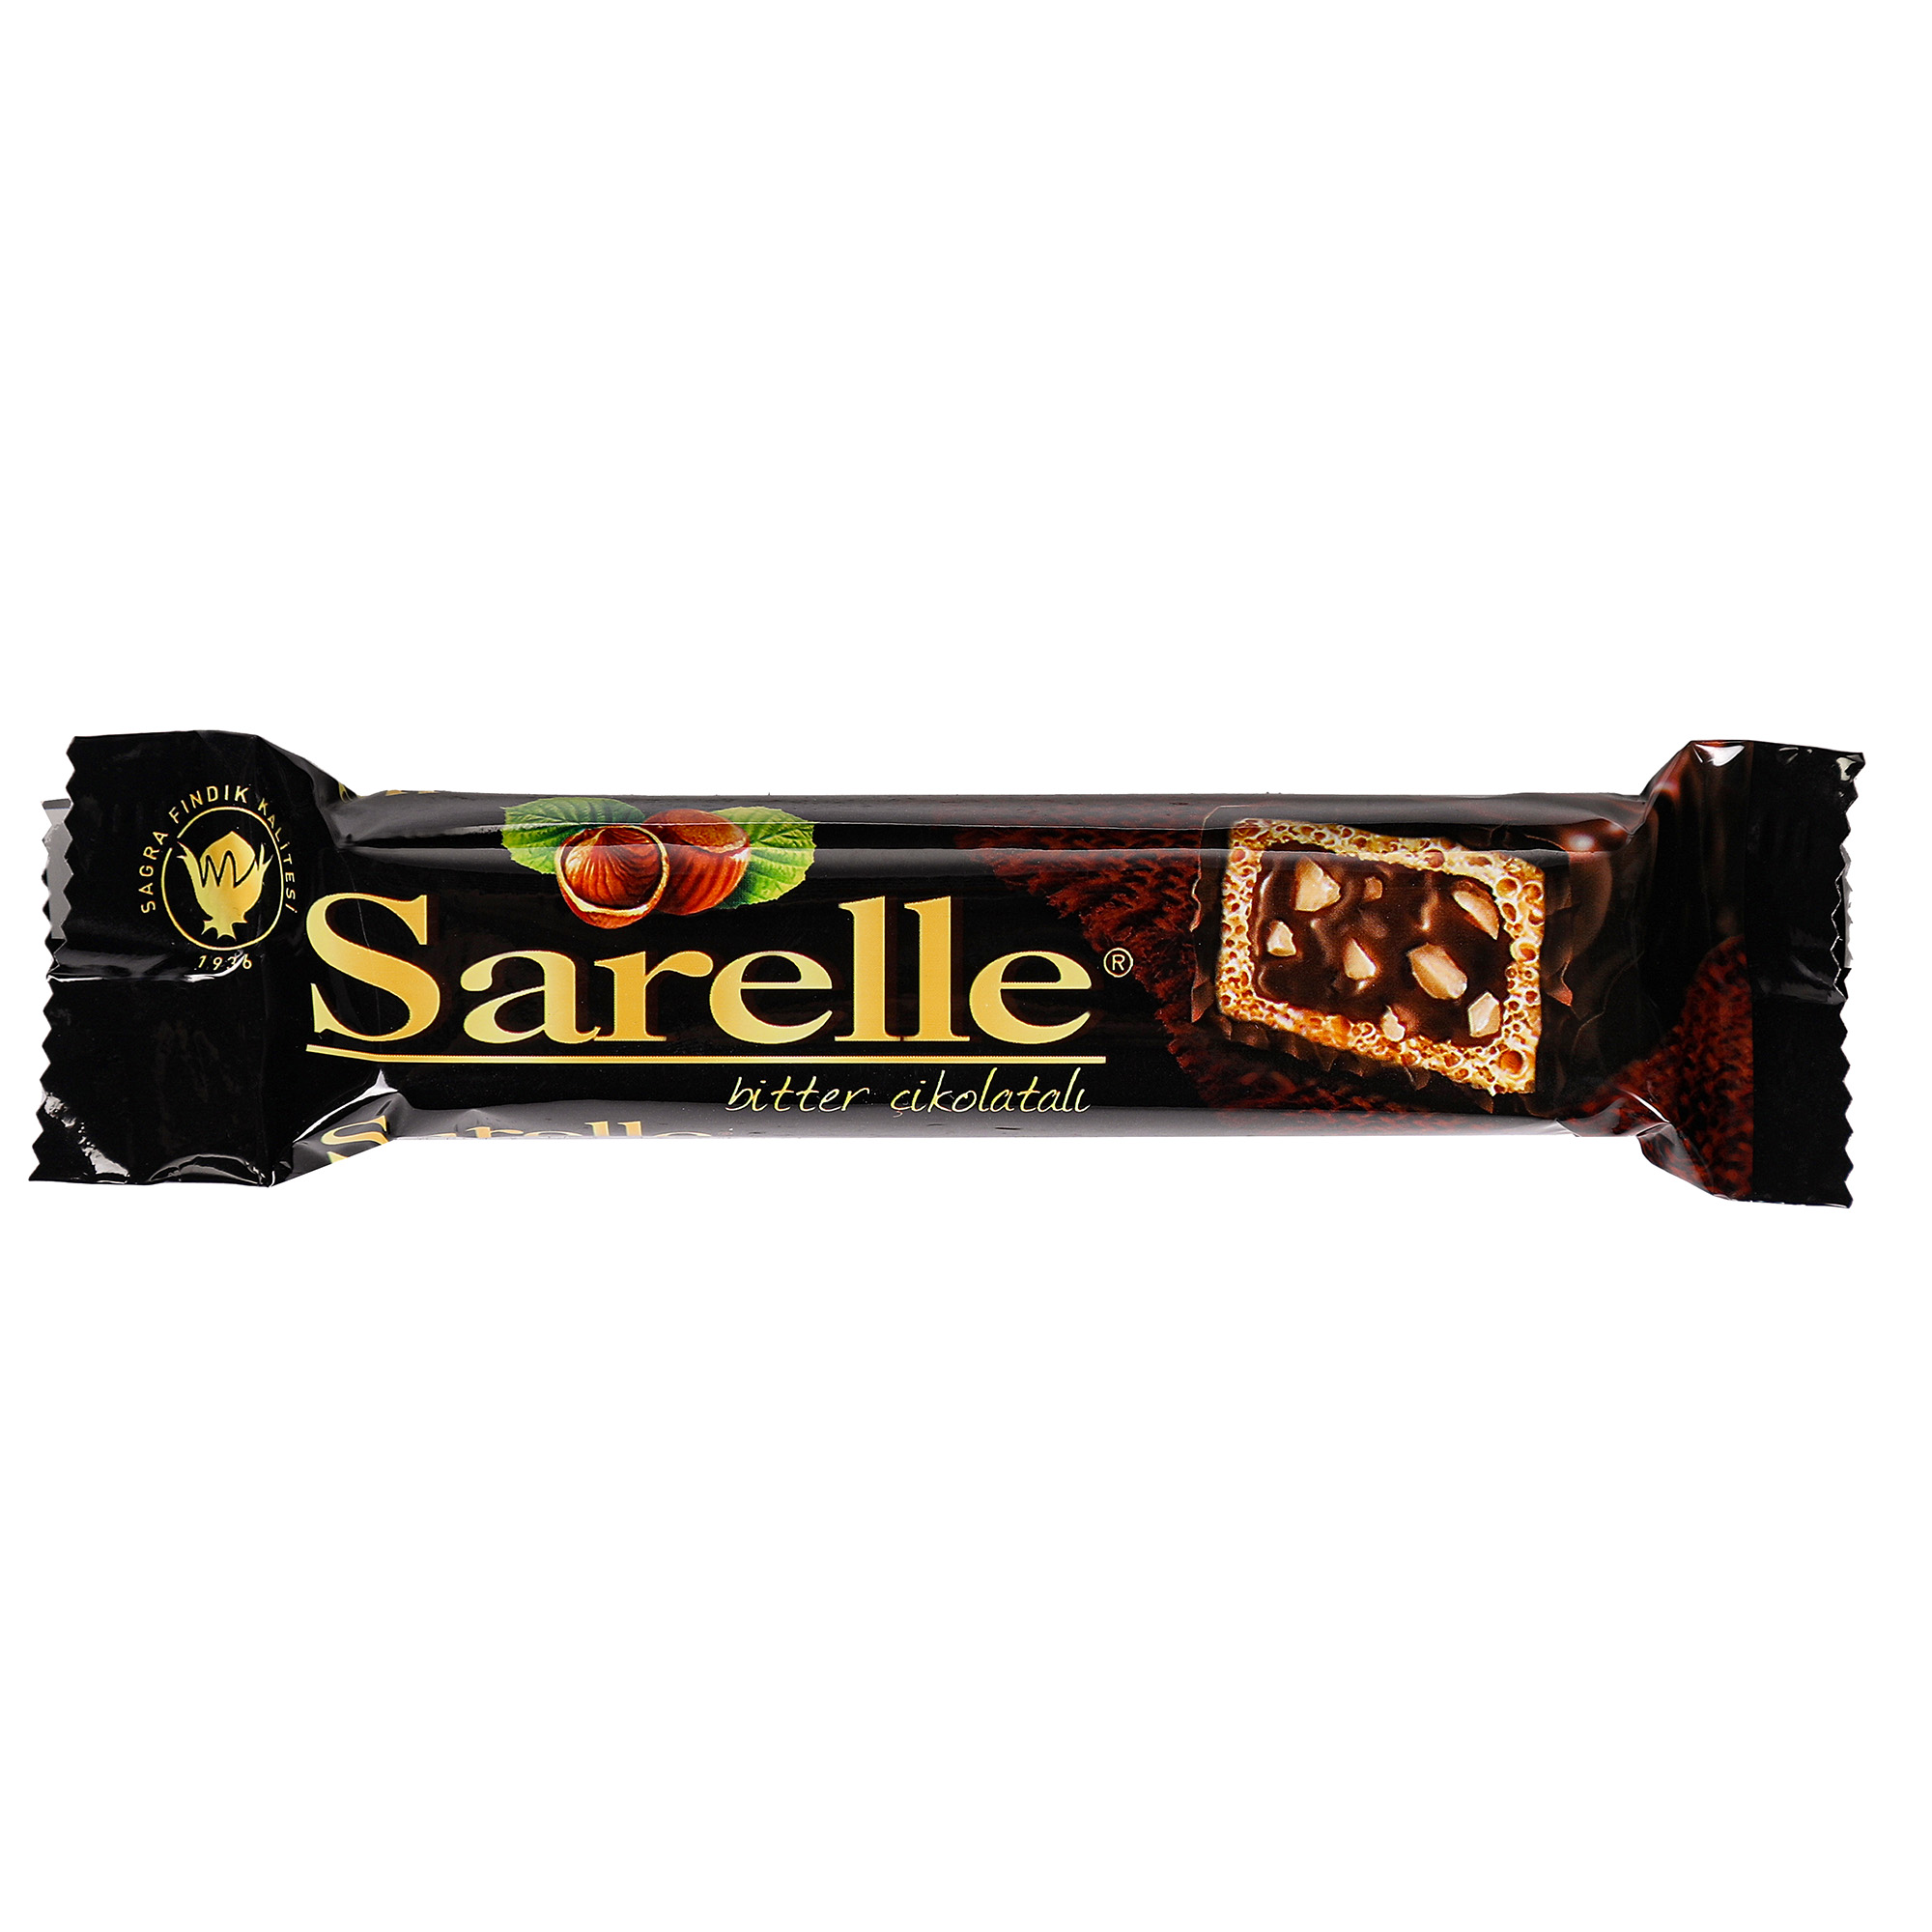 Вафли Sarelle с орехом и шоколадынм кремом в темном шоколаде, 33 г суфле casali манговое в шоколаде 150 гр